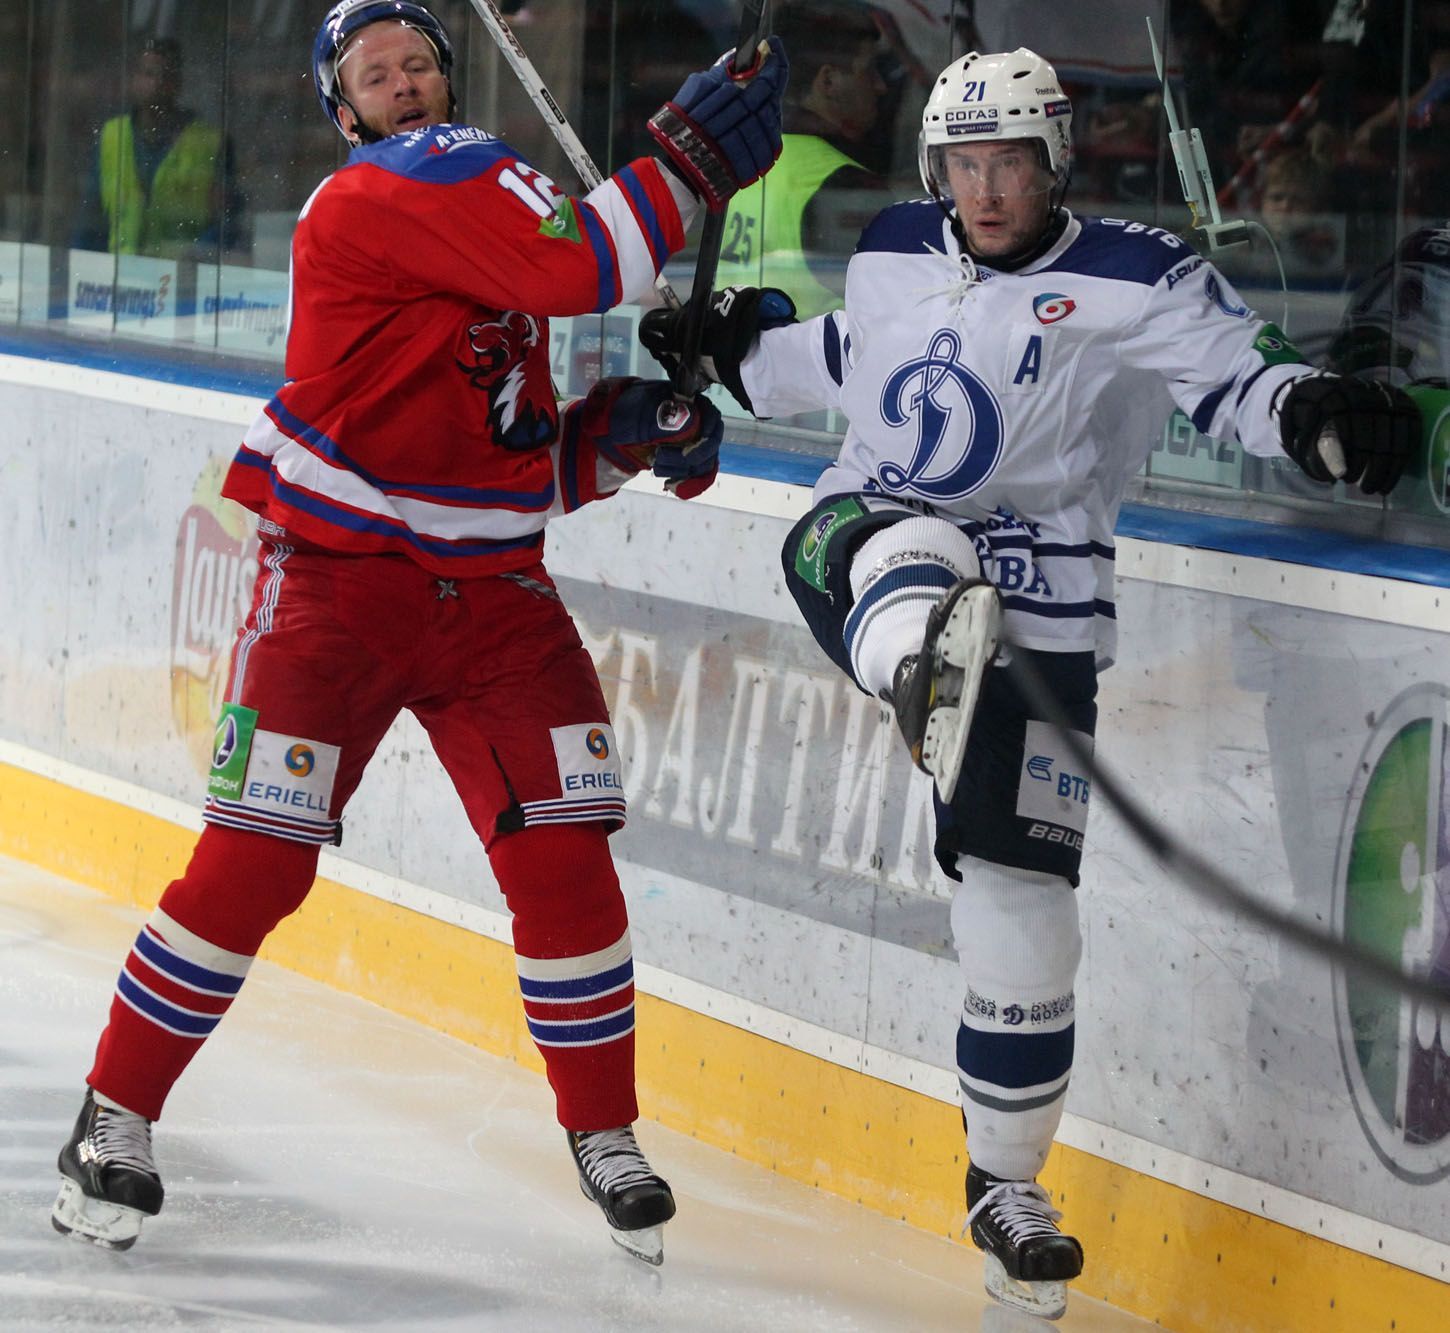 Hokej, KHL, Lev Praha - Dynamo Moskva: Jiří Novotný - Konstantin Gorovikov